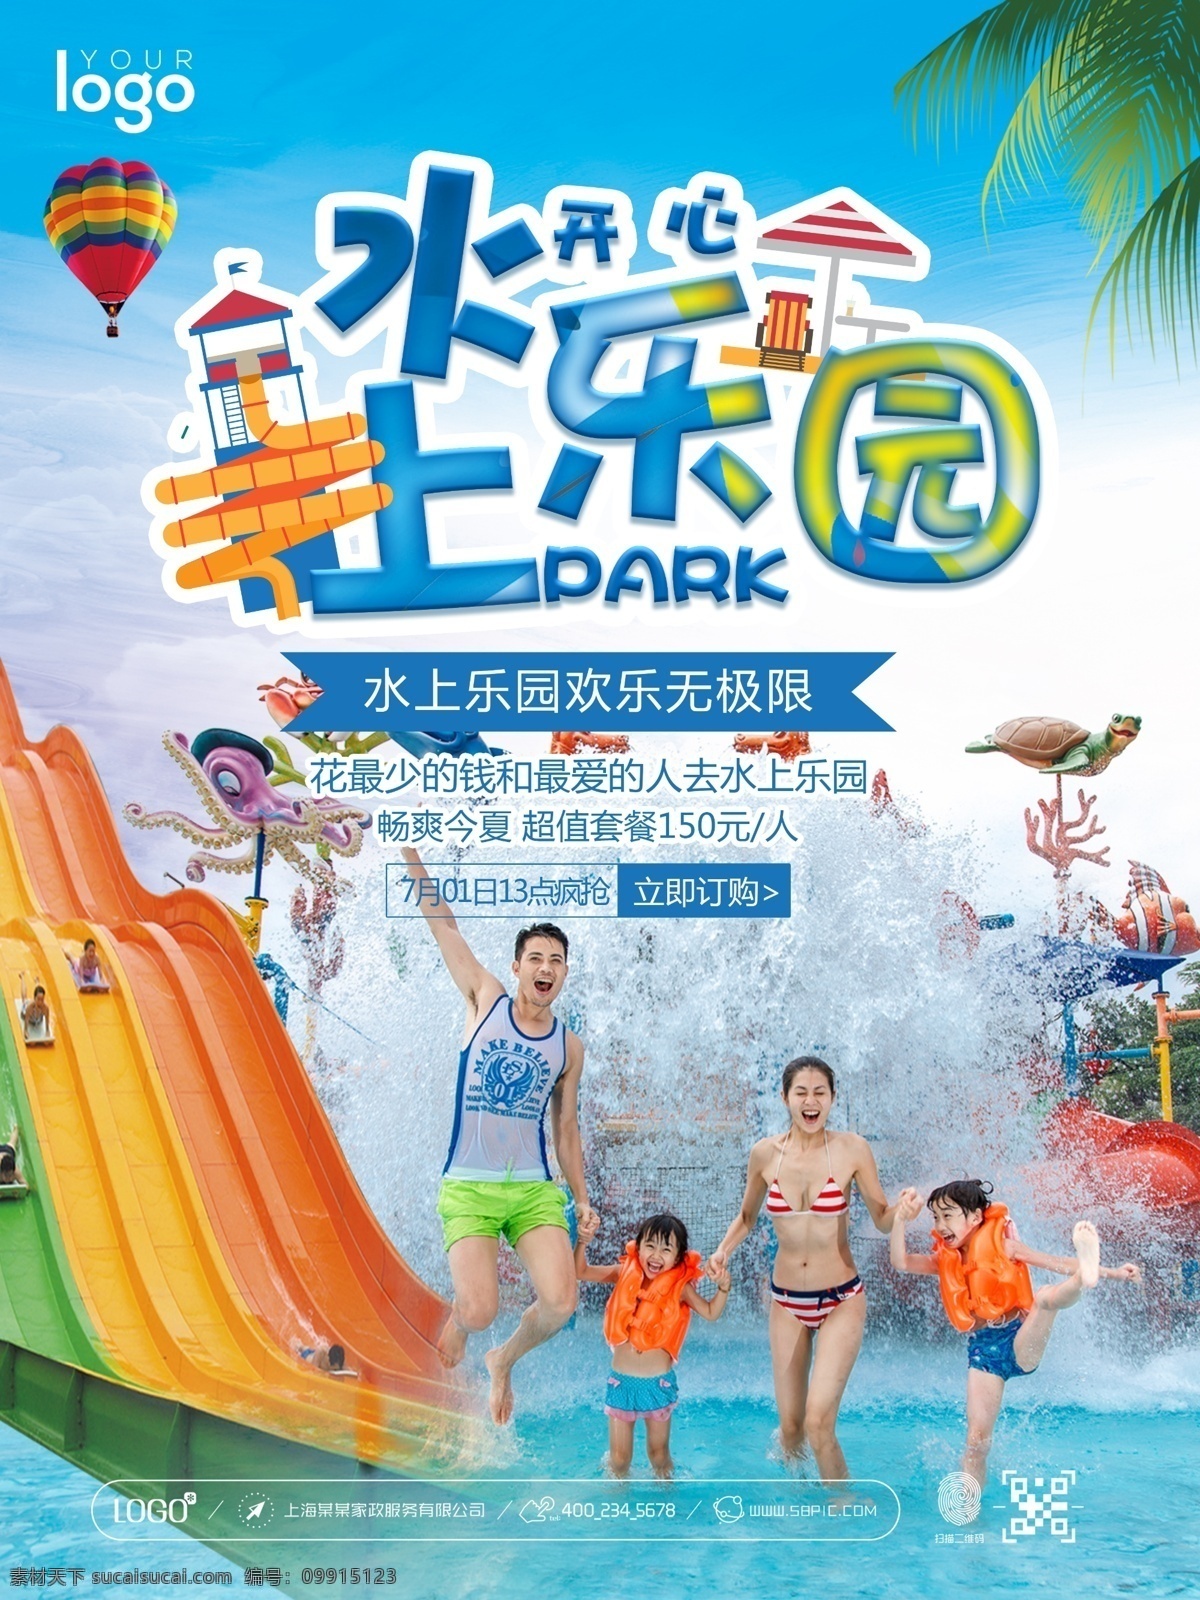 夏日 夏季 水上乐园 水上公园 儿童乐园 儿童水上乐园 水上游乐园 水上漂流 水上活动 水上娱乐 水上运动 游乐园 宣传 促销 海报